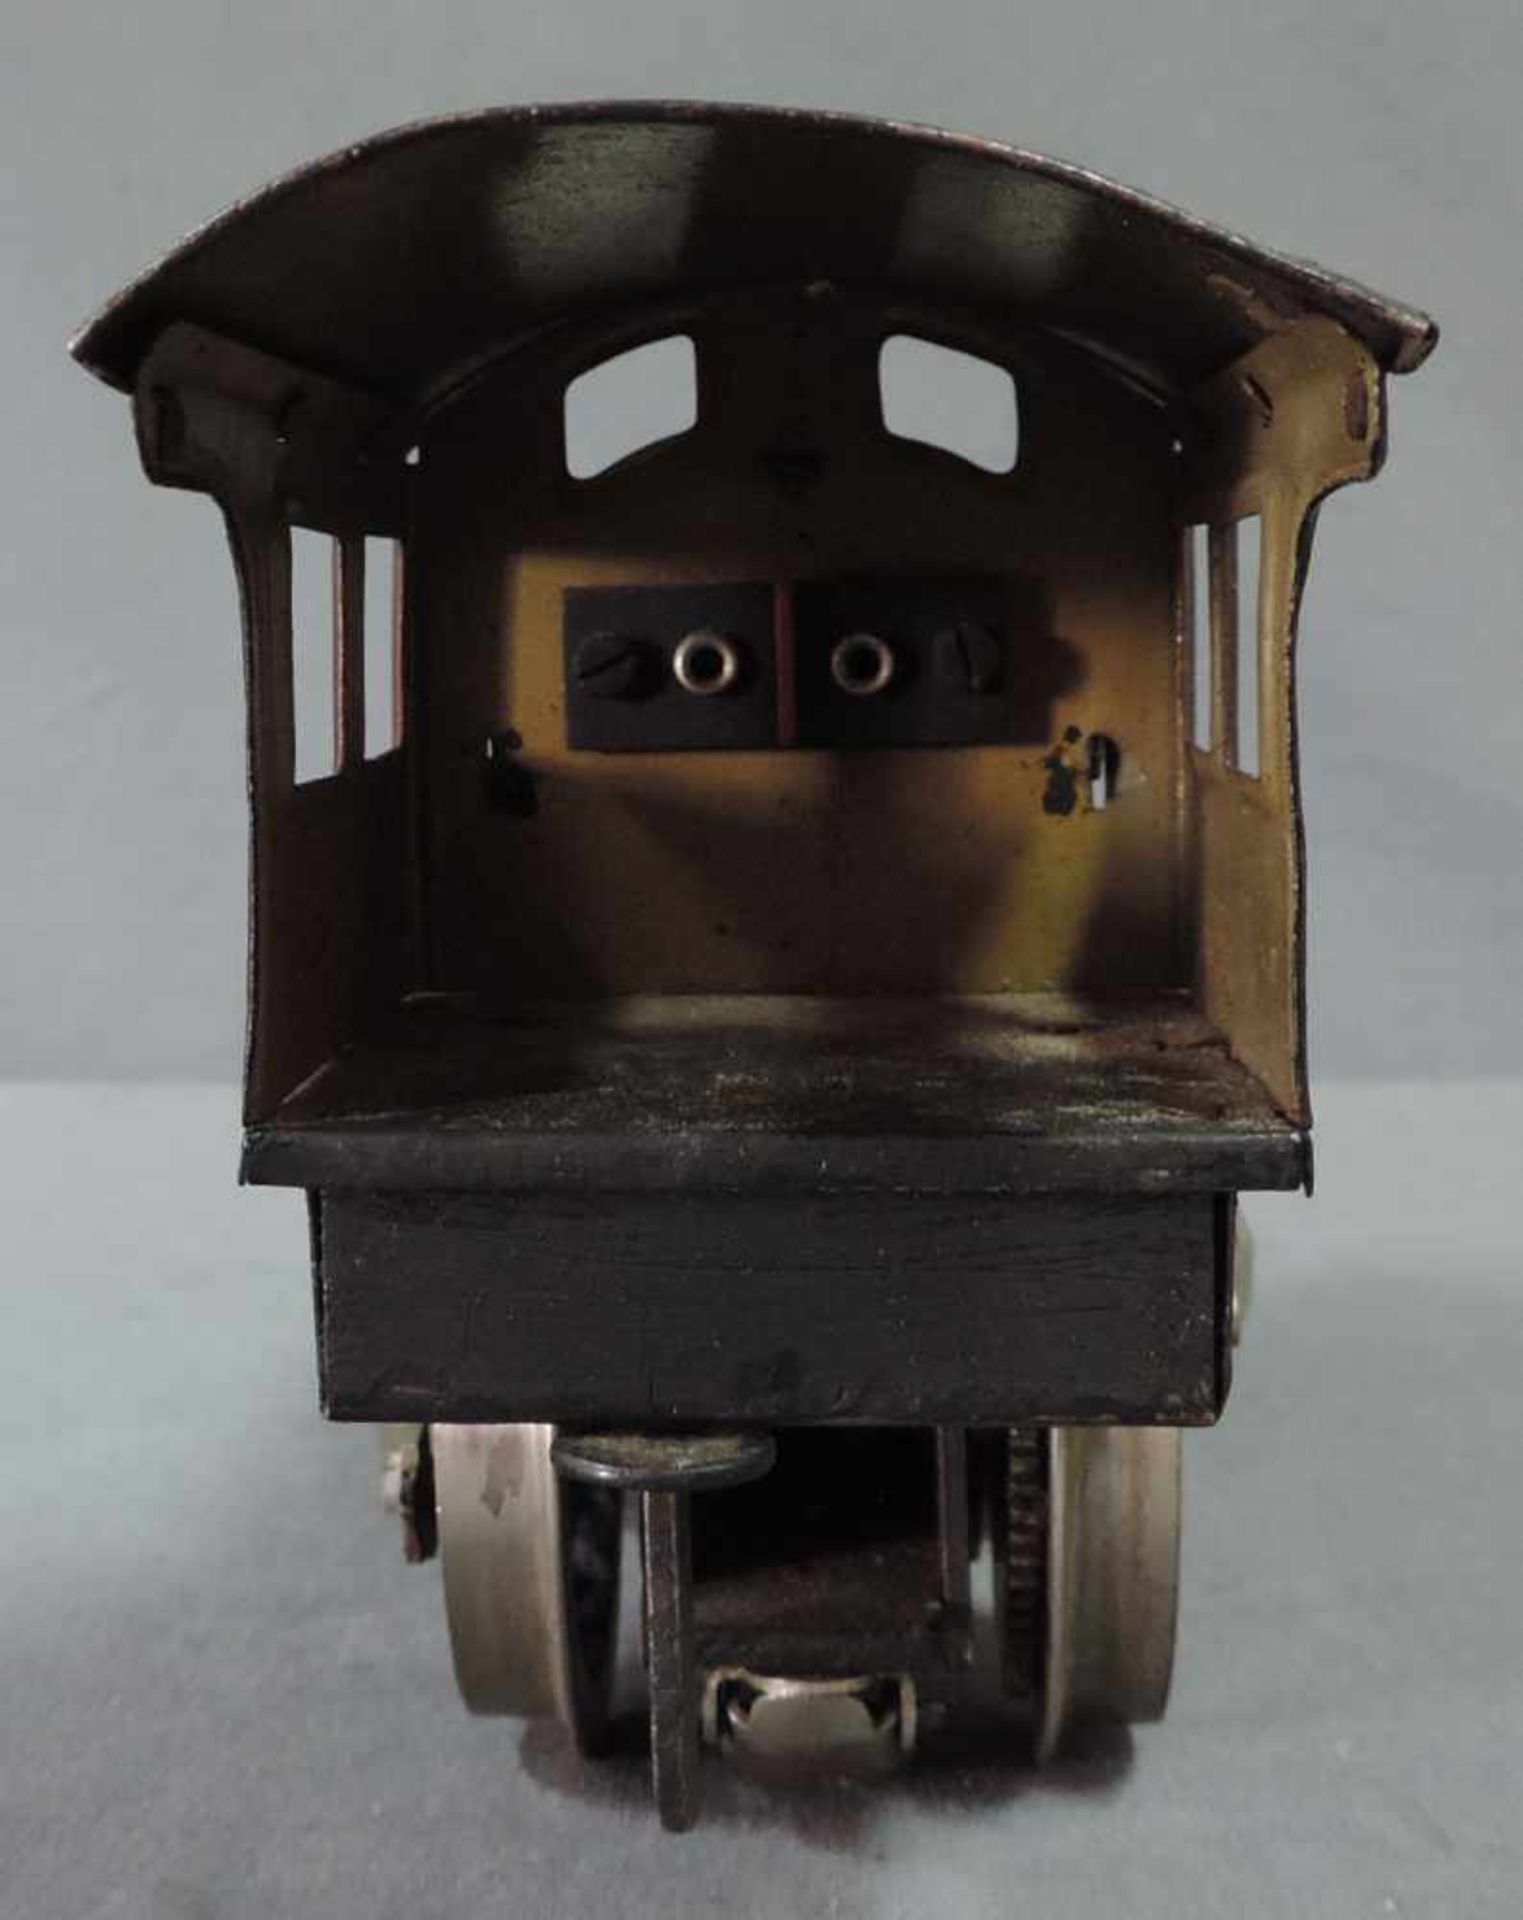 Modell Lokomotive. Märklin. "R 13041" Spur 1 27 cm x 10 cm. Modell Dampflock "R 13041" von Märklin - Bild 4 aus 8